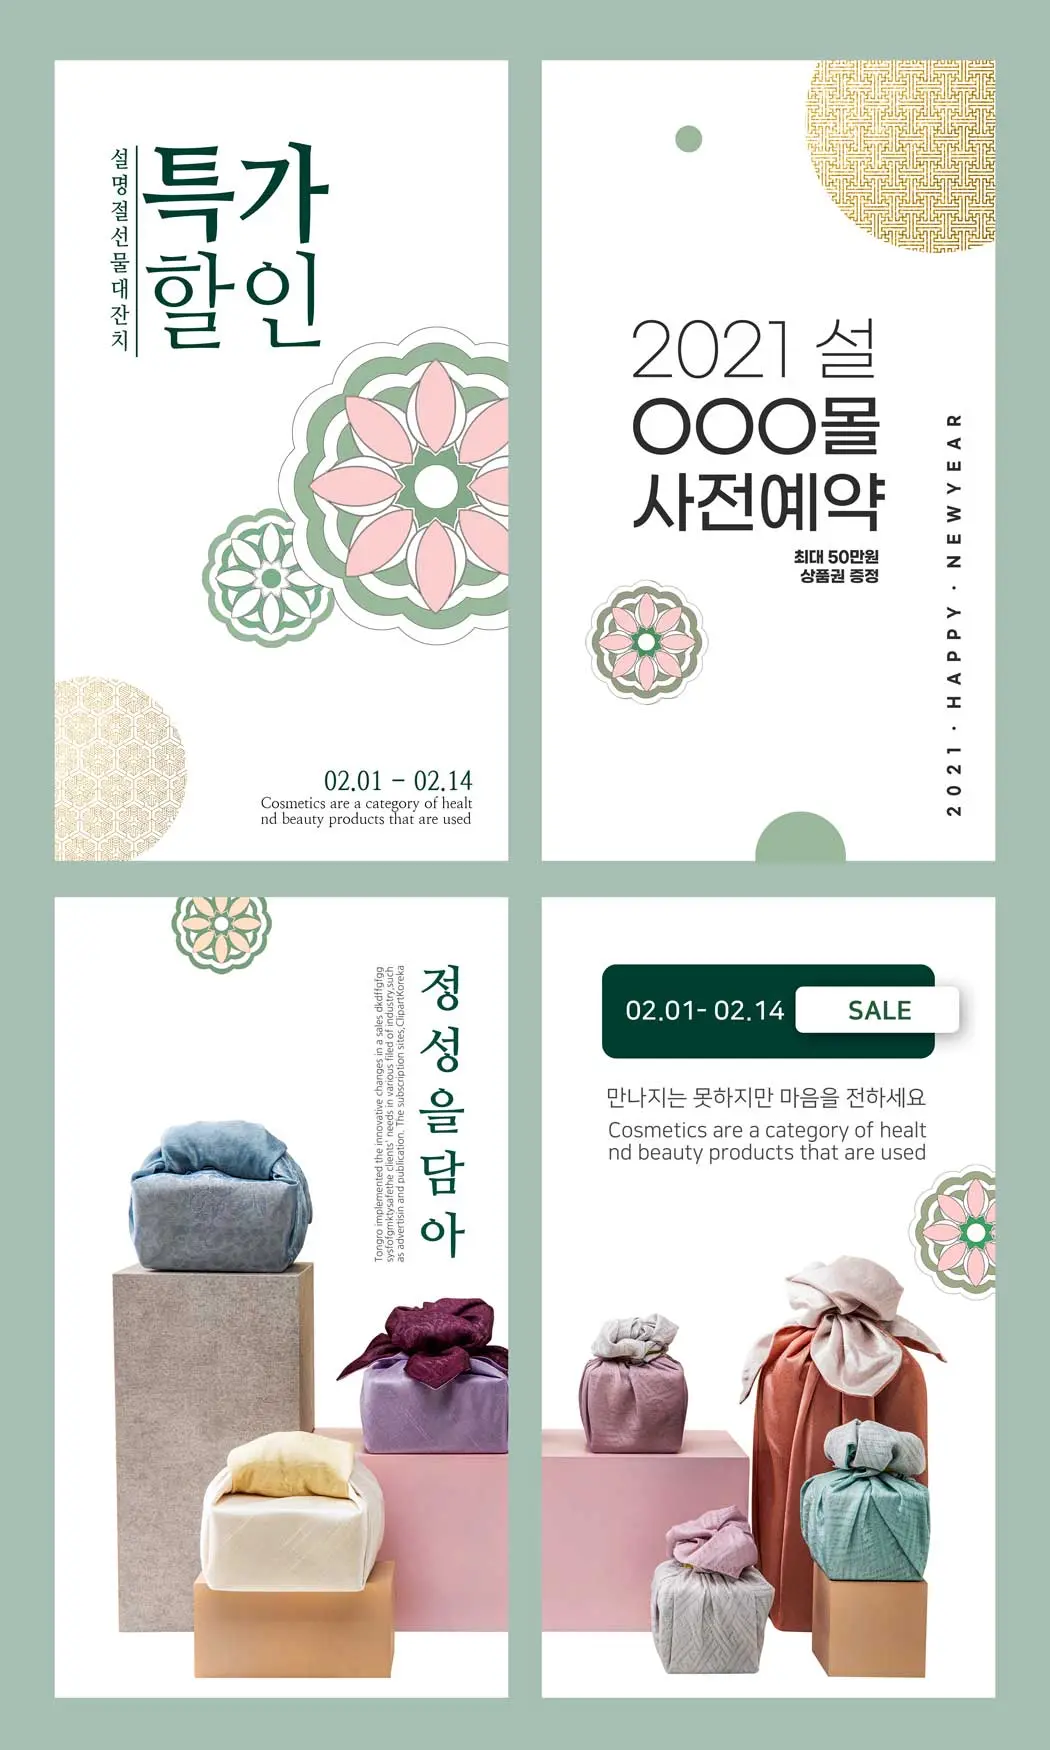 韩国风格礼品促销广告海报设计素材